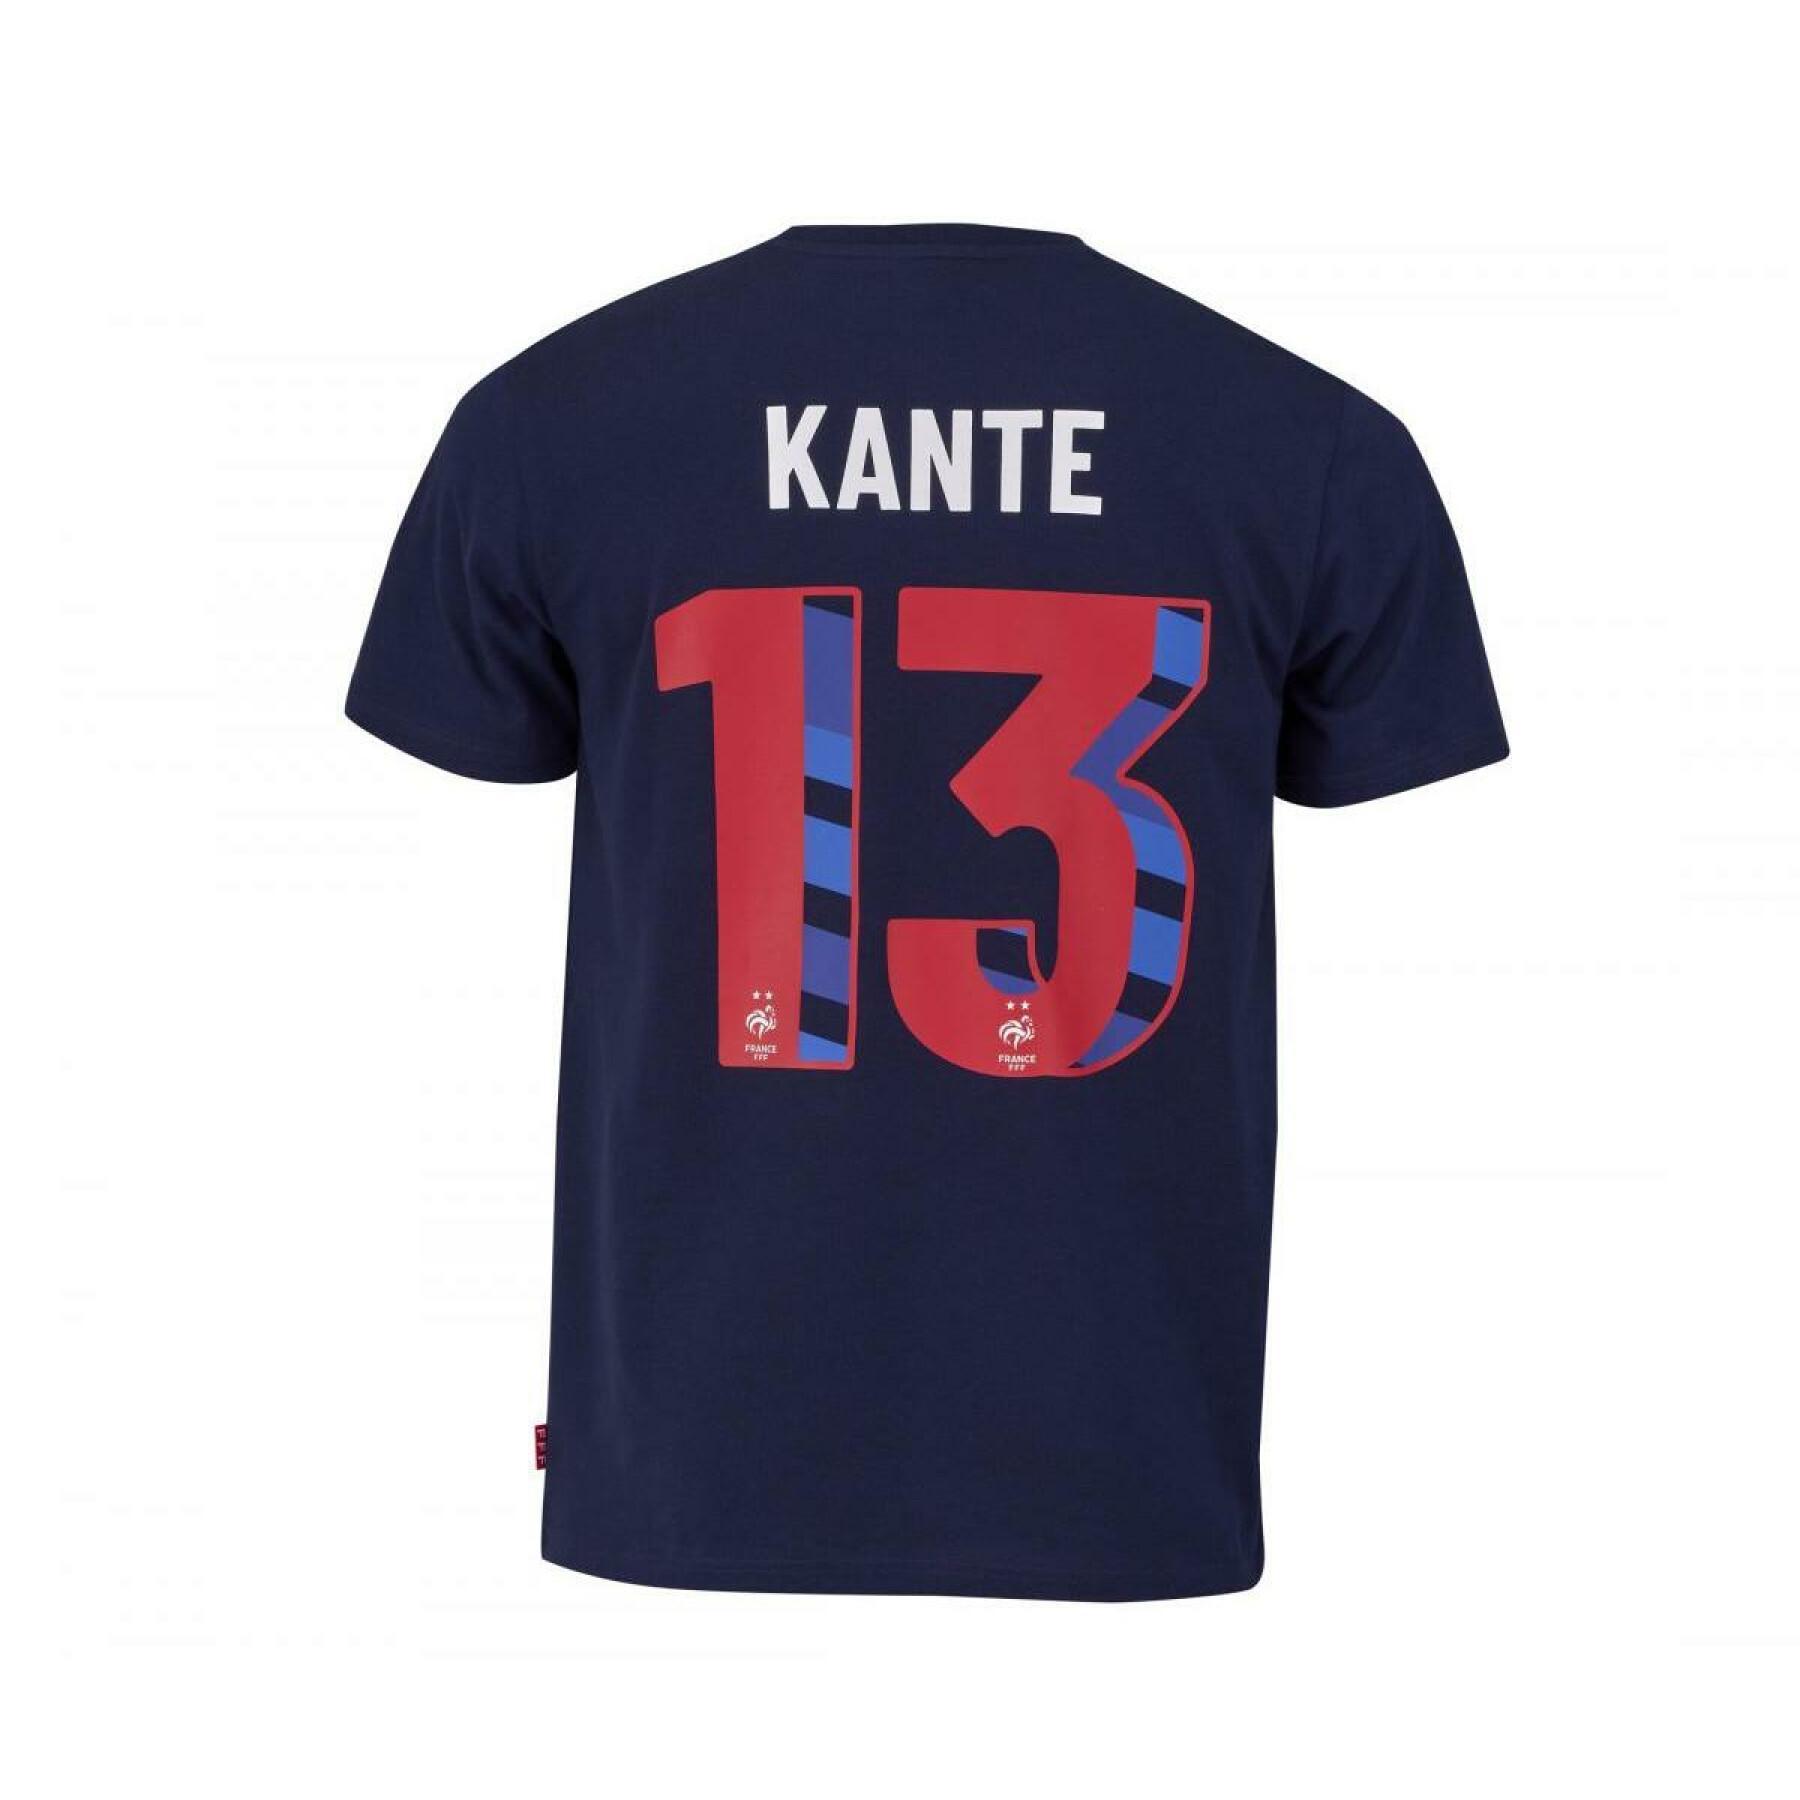 Child's T-shirt France Kante N°13 2022/23